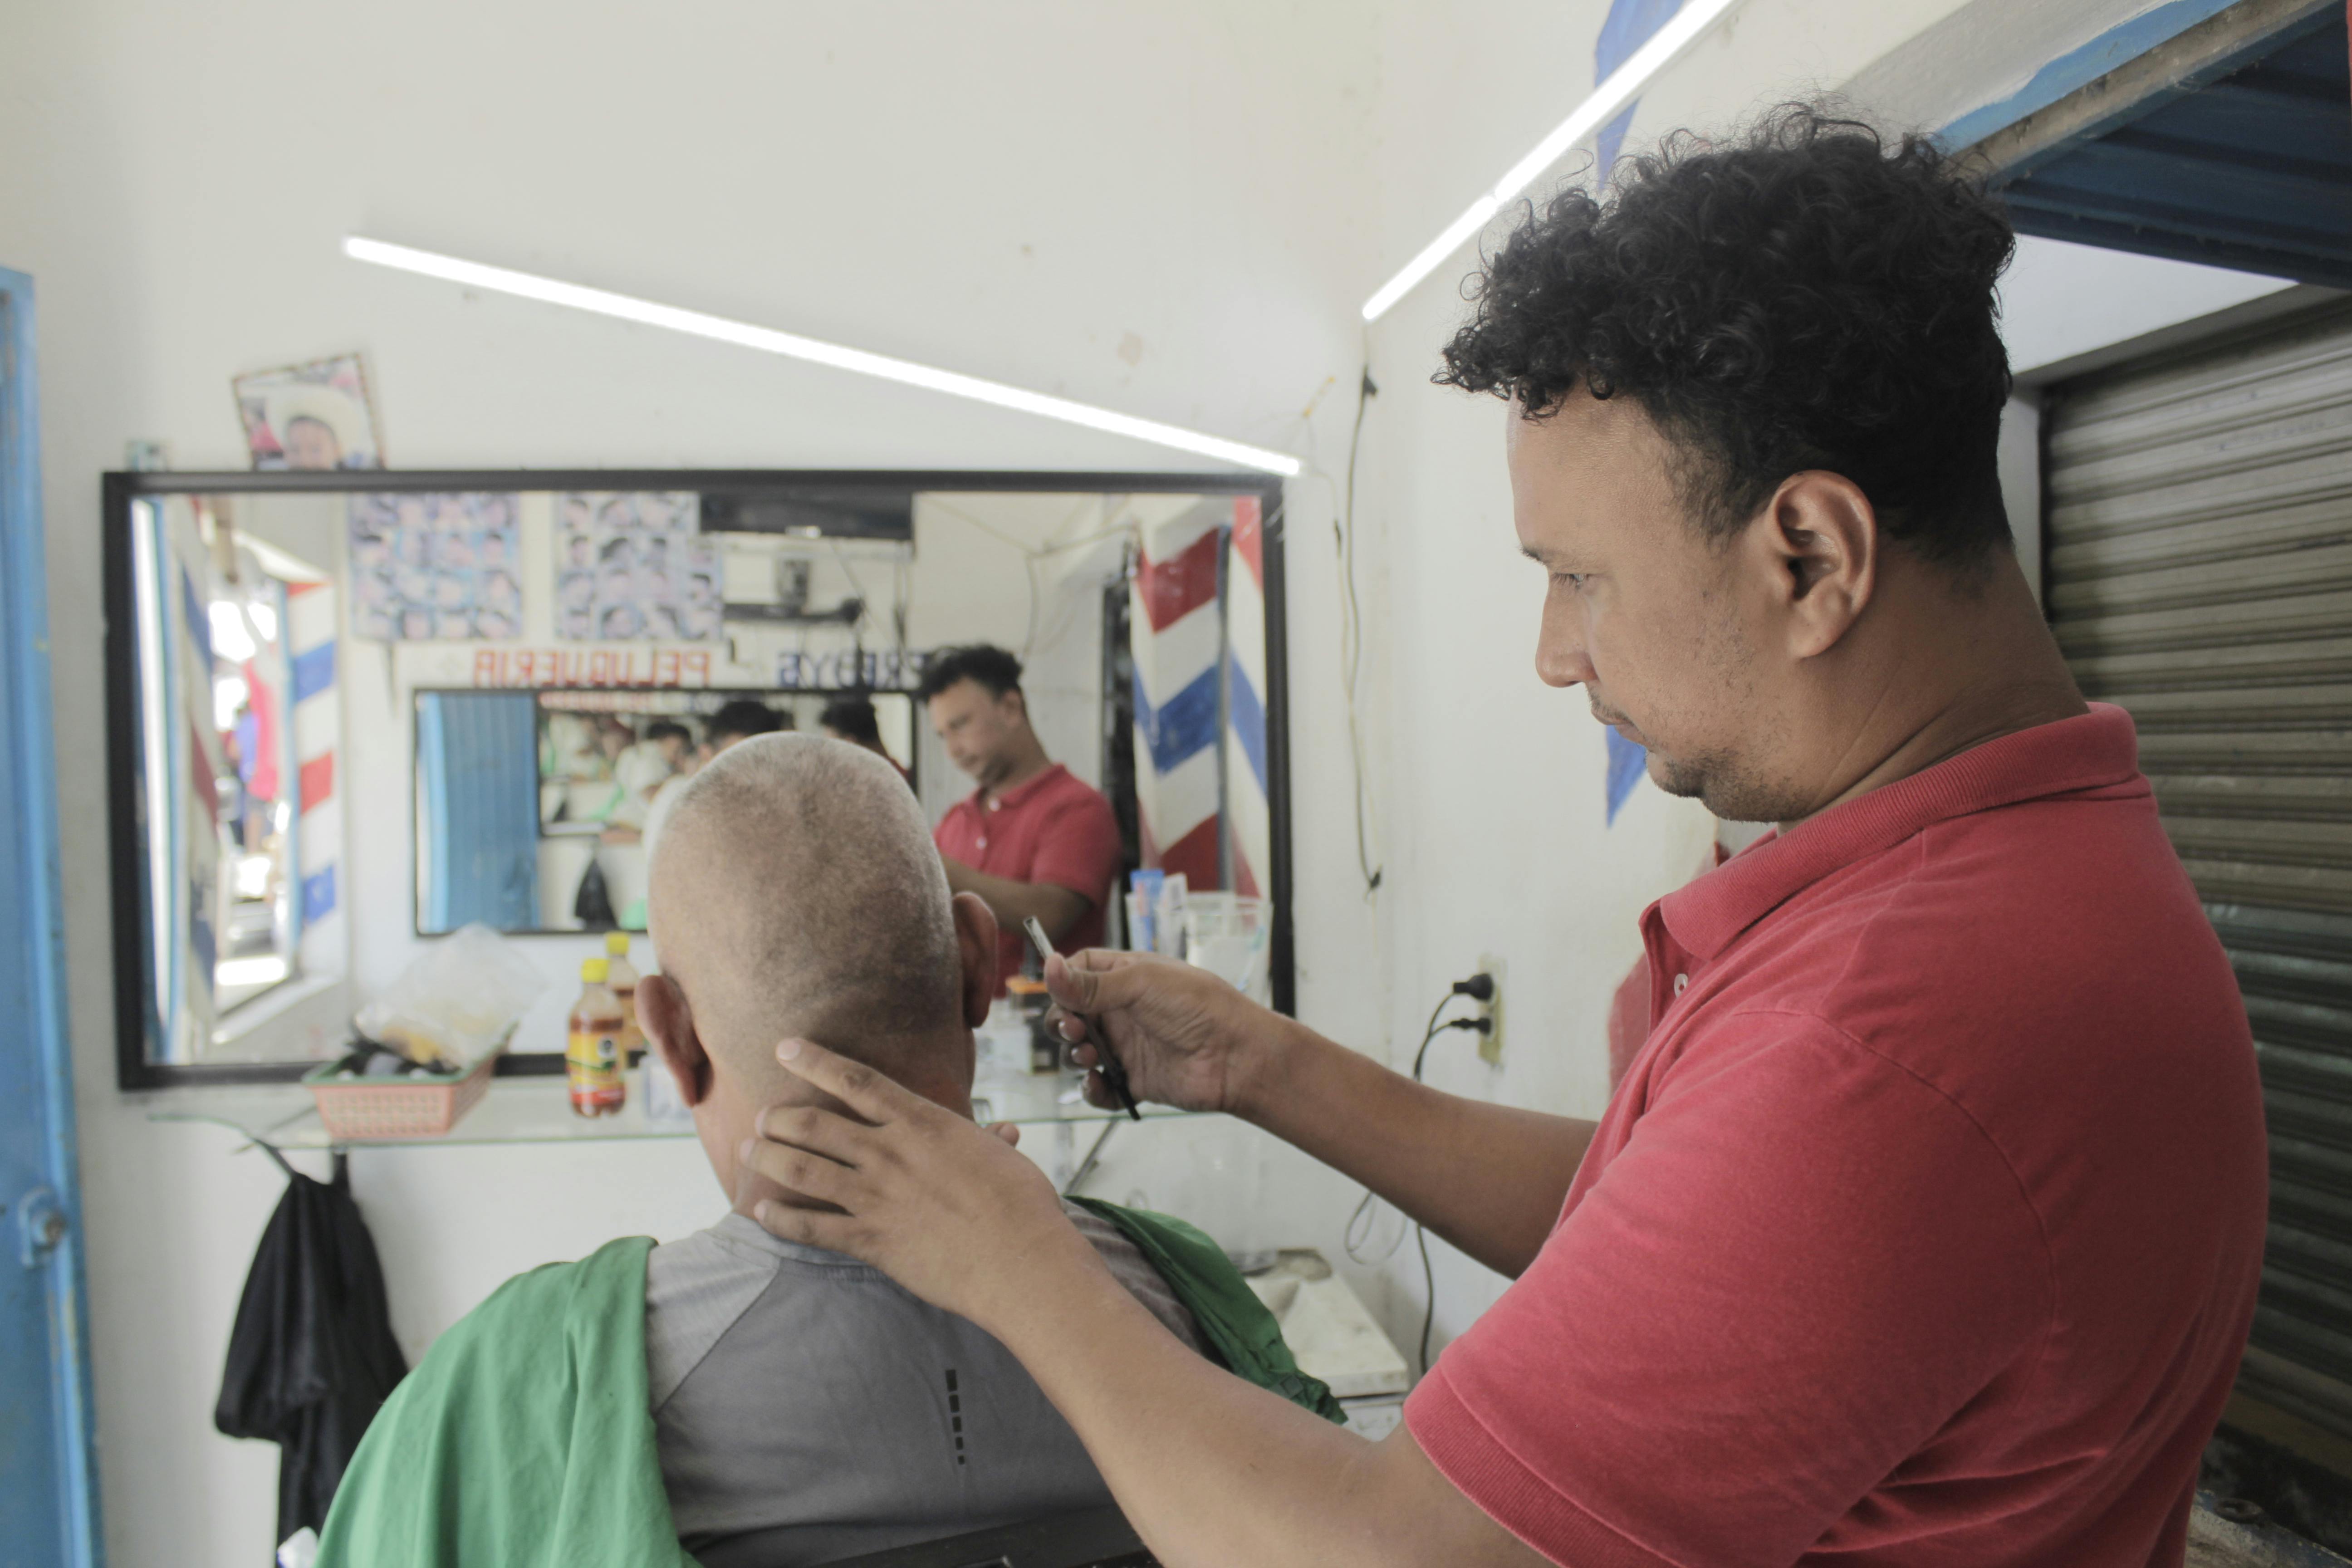 Un hombre originario de honduras le corta el cabello a otro mexicano